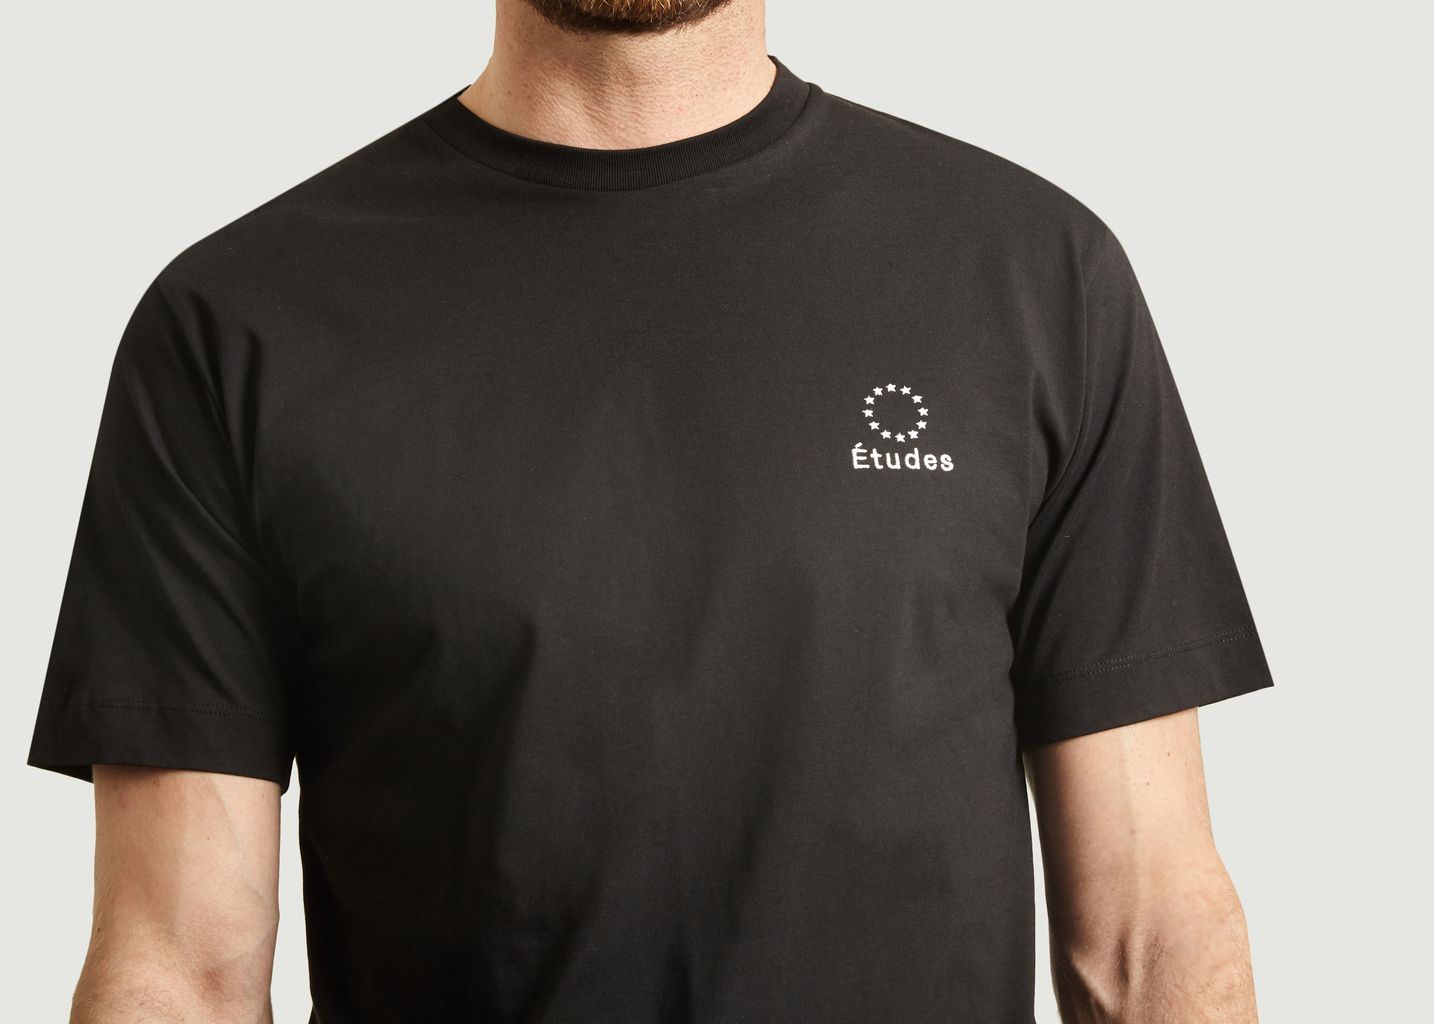 Wonder printed t-shirt - Etudes Studio